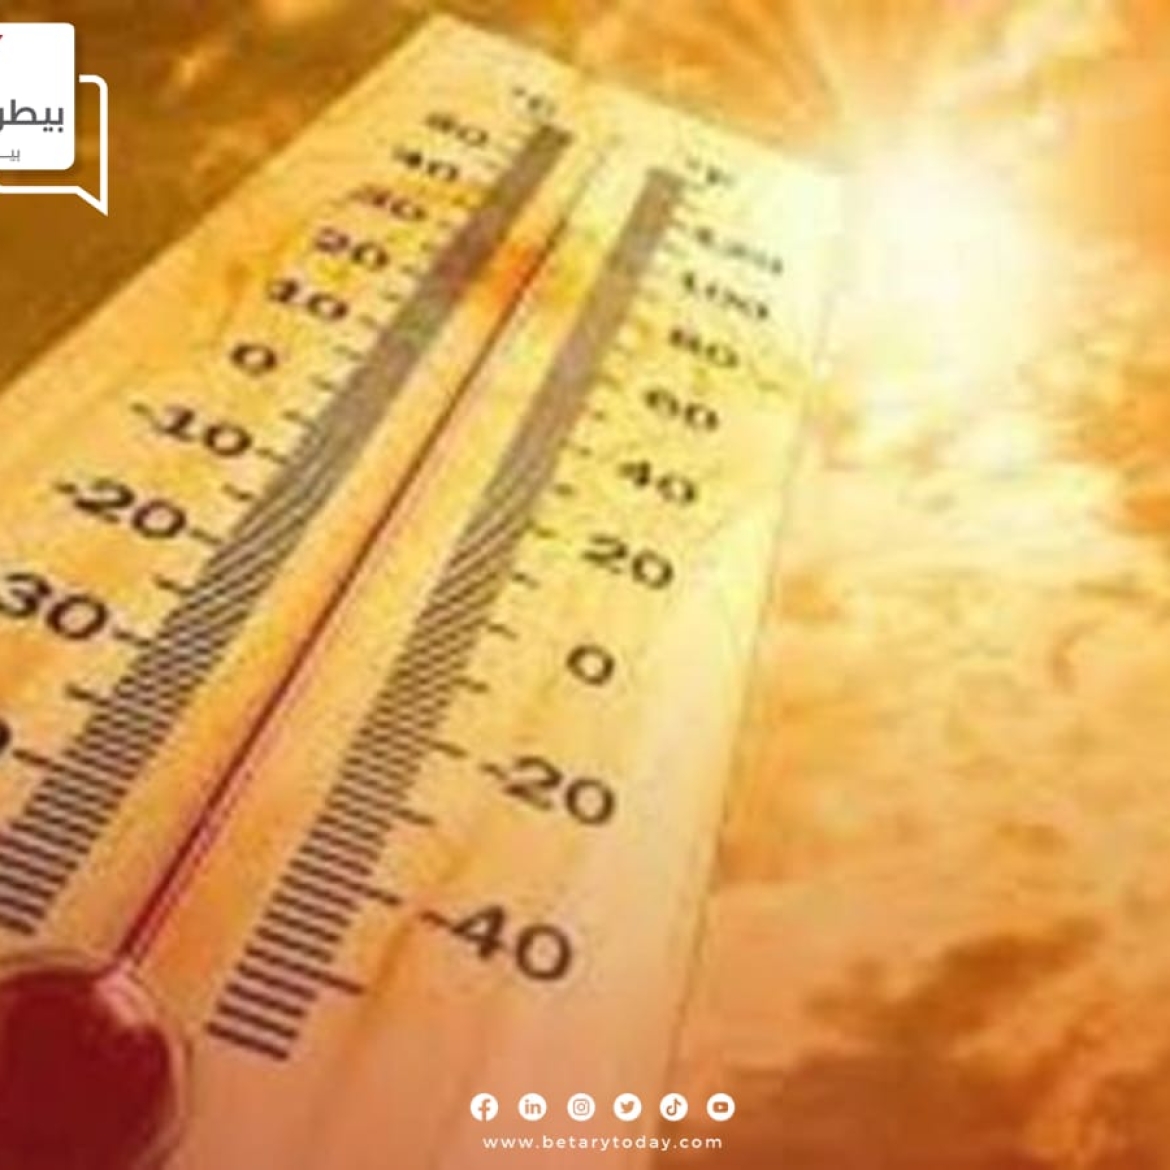 ارتفاع ملحوظ في درجات الحرارة اليوم الخميس في أول أيام الصيف